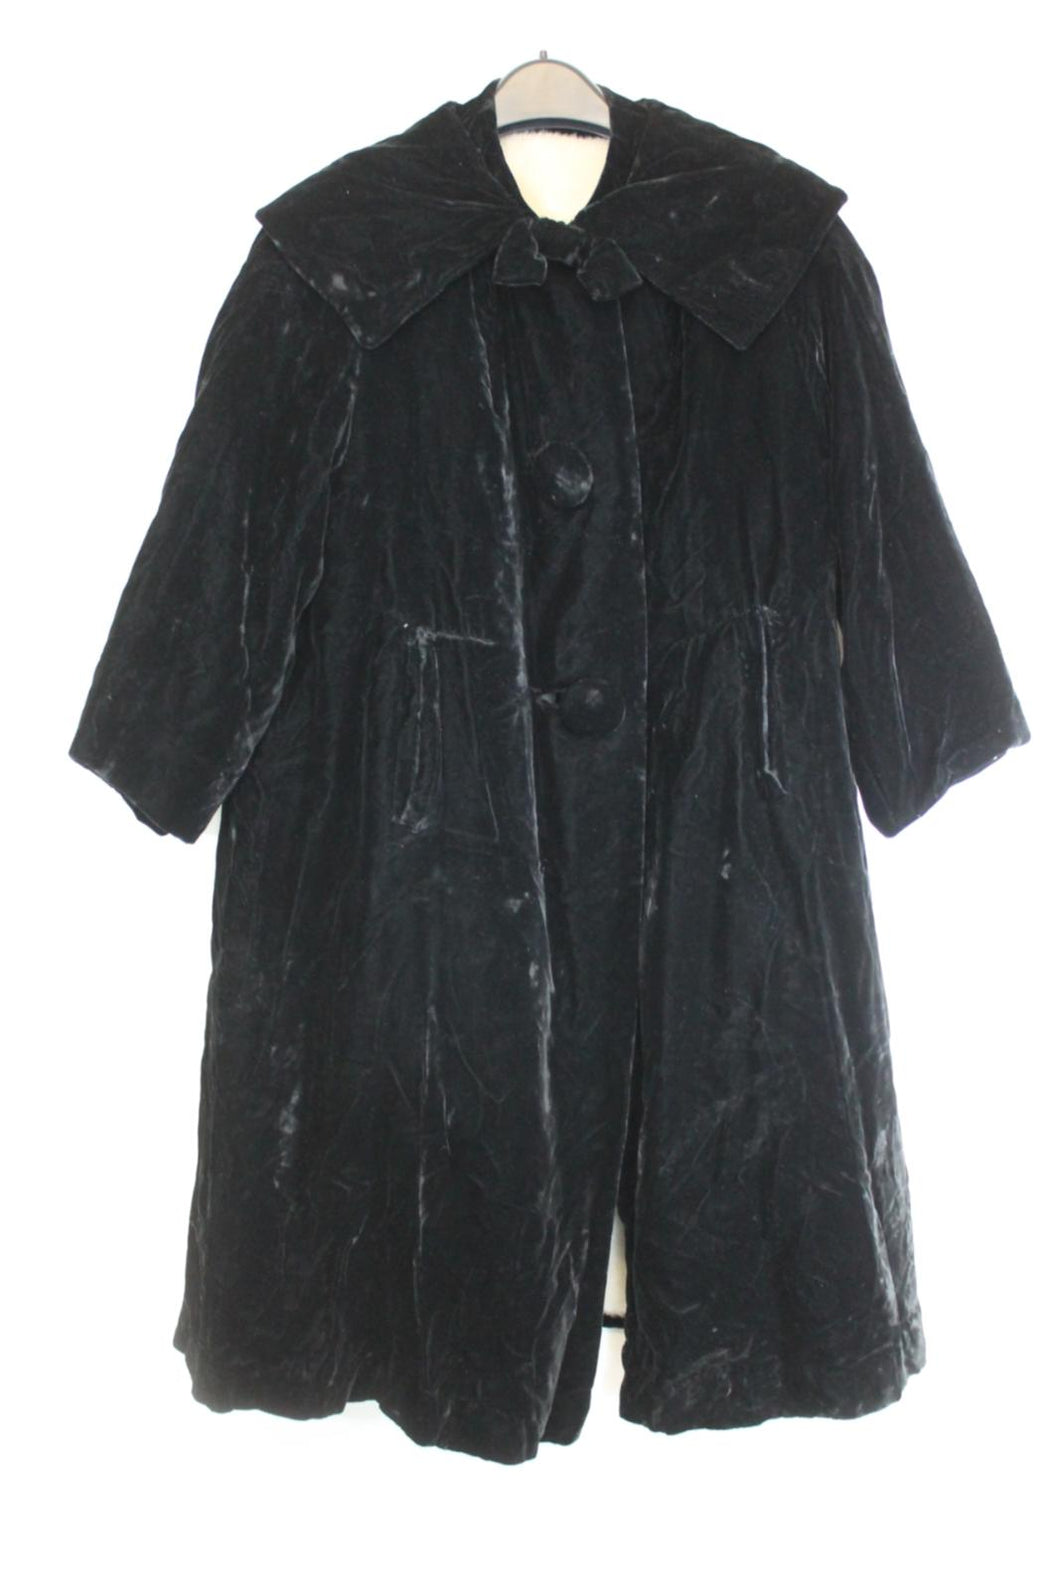 Ladies Black Velvet Faux Fur Lined Long Vintage Opera Coat Approx. Size L